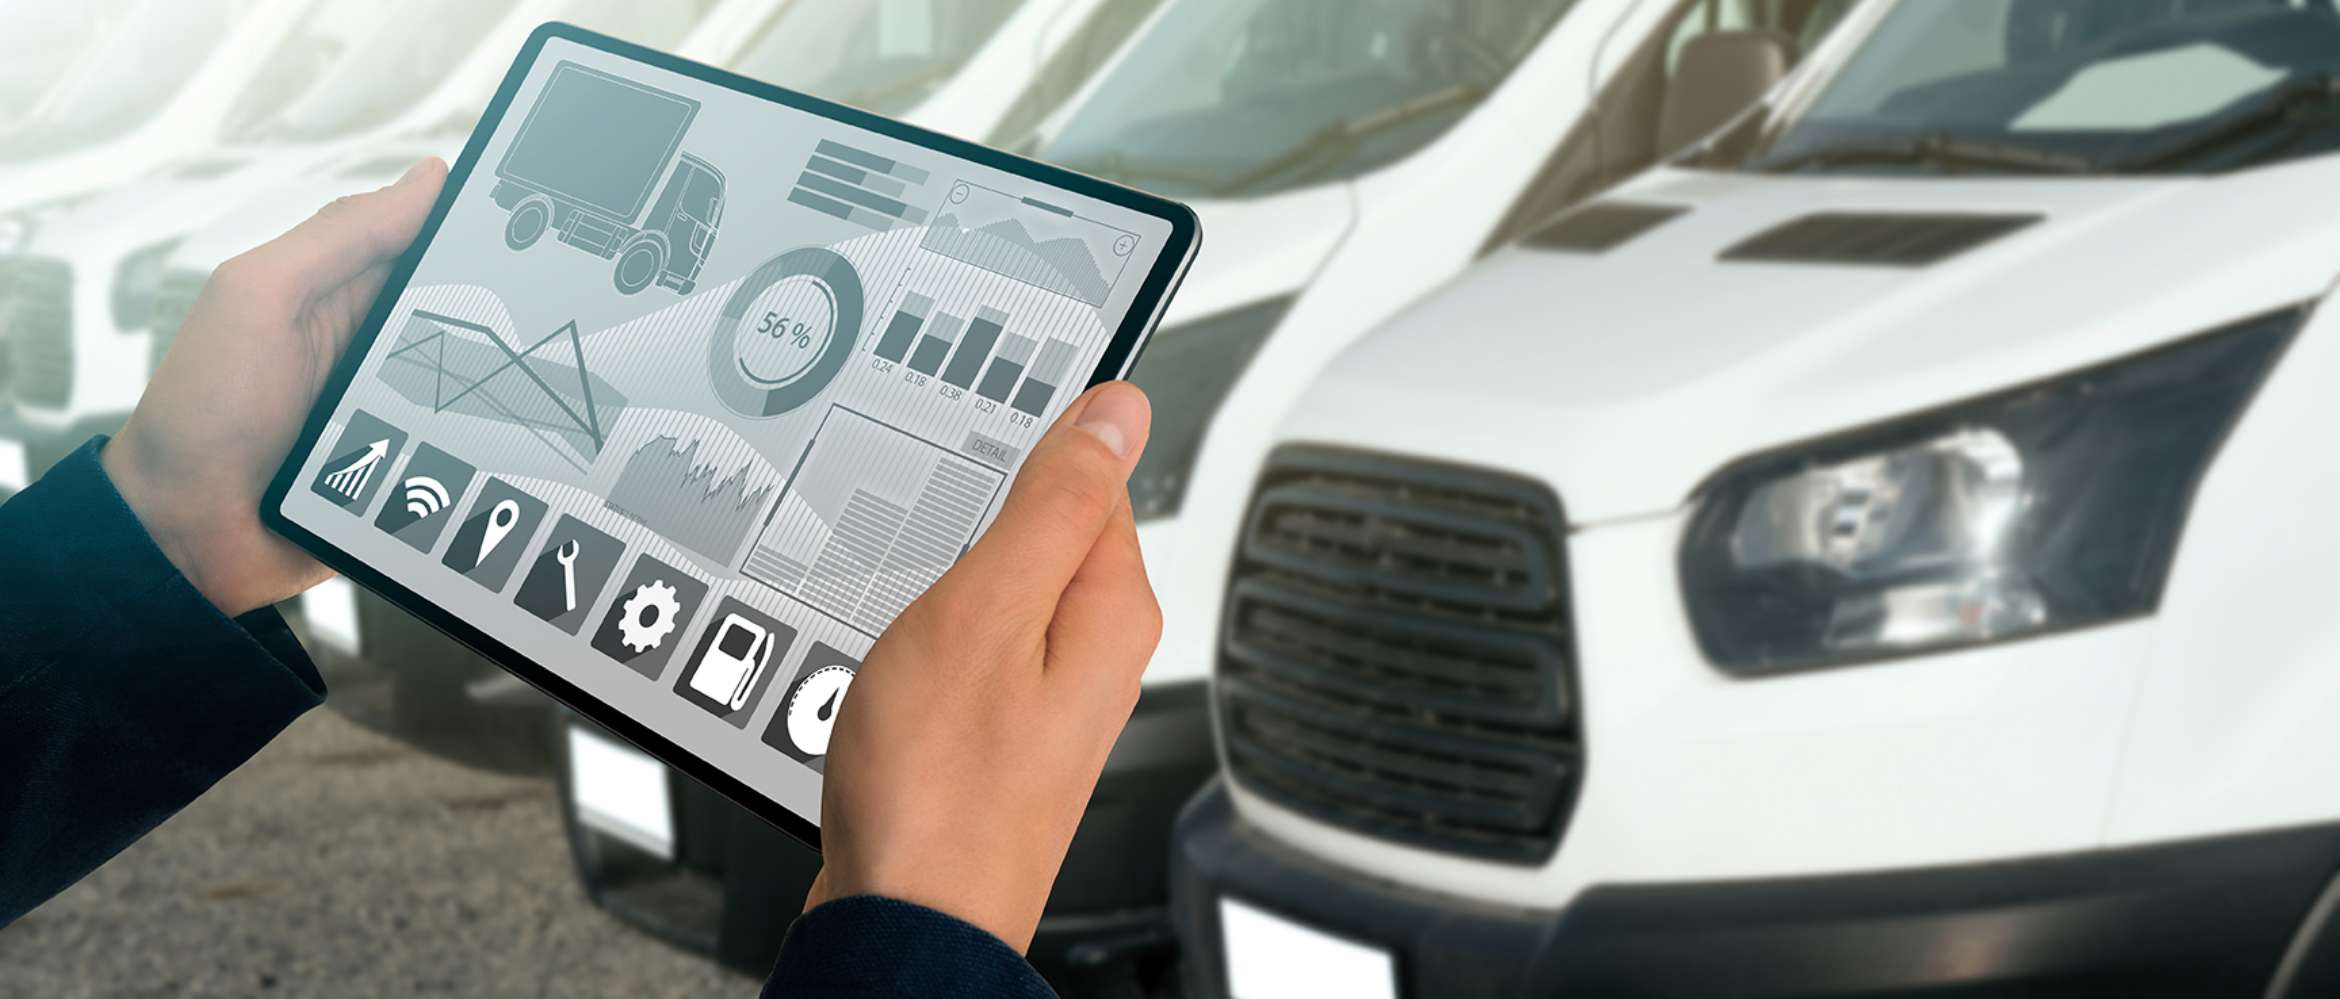 Ein Tablet zeigt in dieser Transport- und Logistikszene Informationen und Optionen für einen Lastwagen an. Der Benutzer steht vor einer Flotte von Fahrzeugen.